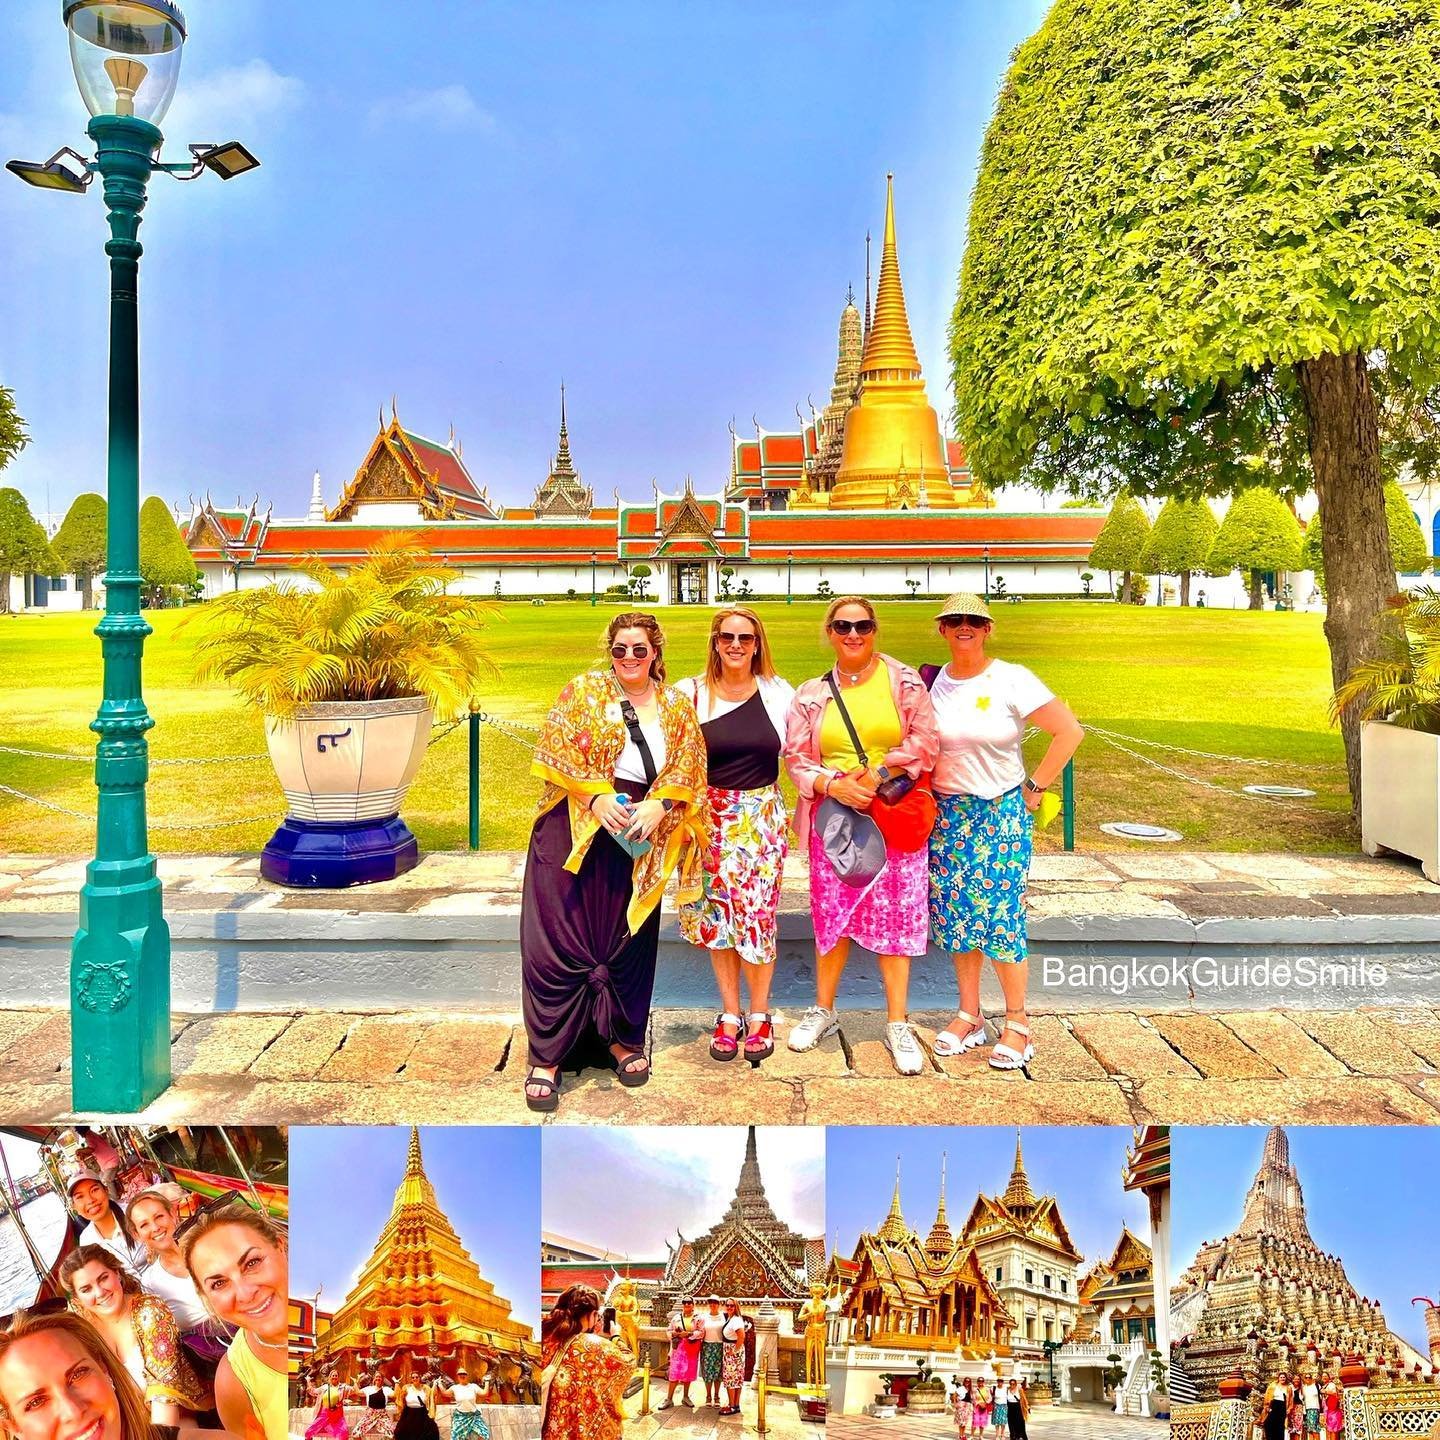 Afleiden oplichter Vervelen Bangkok Guide Smile by Mandy |‎ Bangkok Tour Guide |‎ Bangkok Private Tours